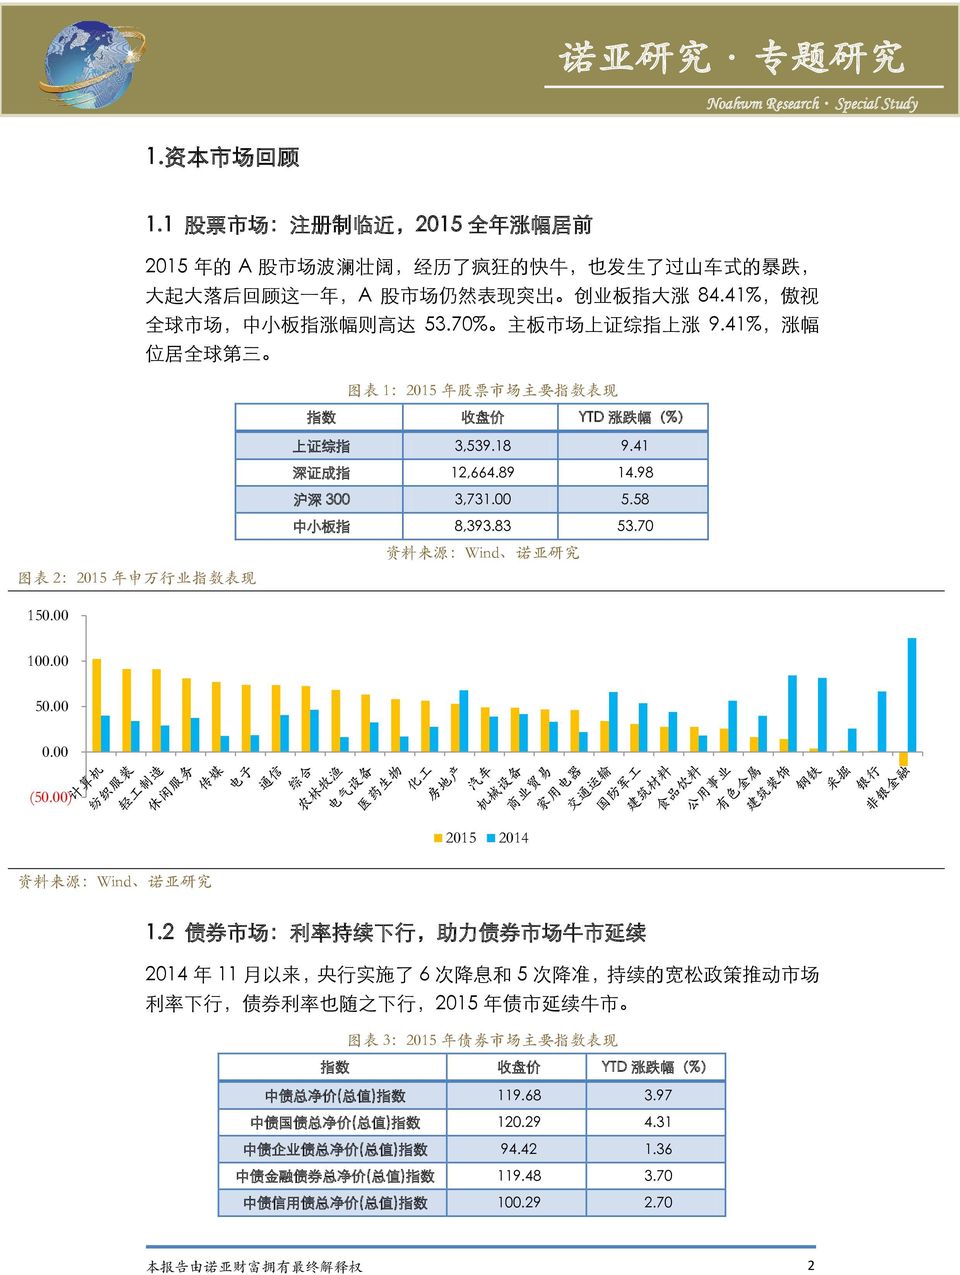 70 资料来源 Wind 诺亚研究 图表 2 2015 年申万行业指数表现 150.00 100.00 50.00 0.00 (50.00) 2015 2014 资料来源 Wind 诺亚研究 1.